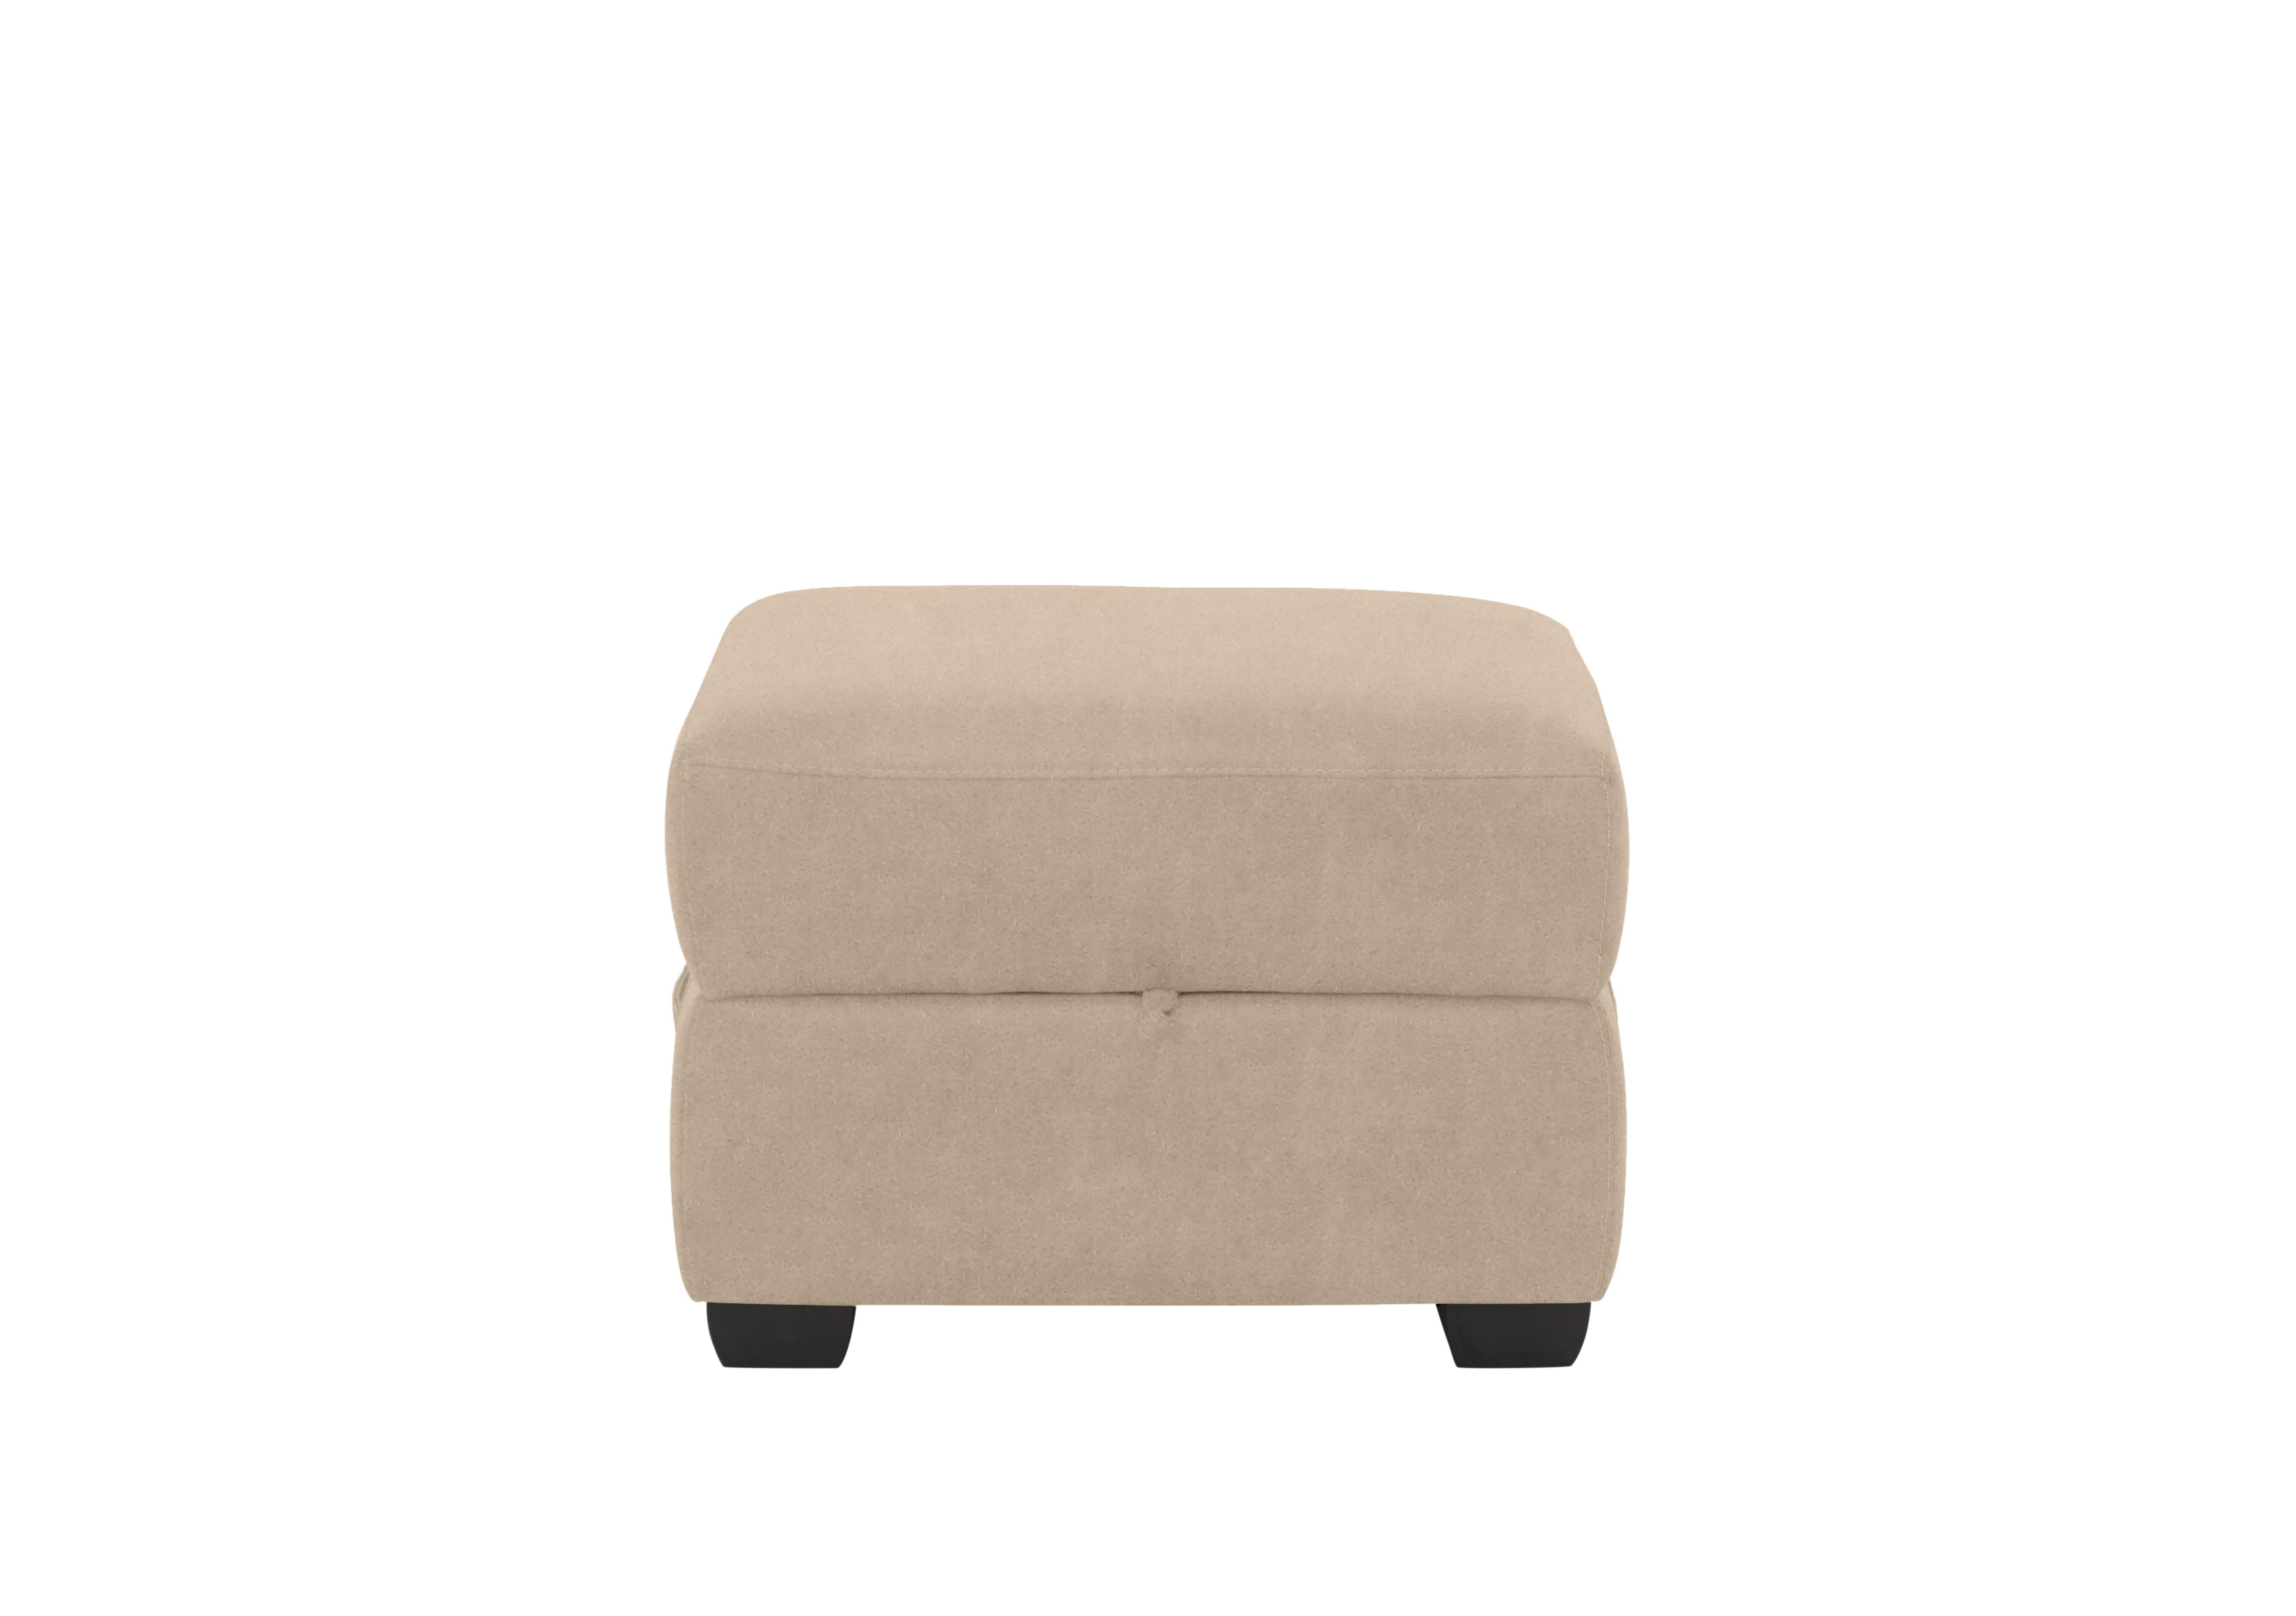 Missouri Fabric Storage Footstool in Bfa-Blj-R20 Bisque on Furniture Village